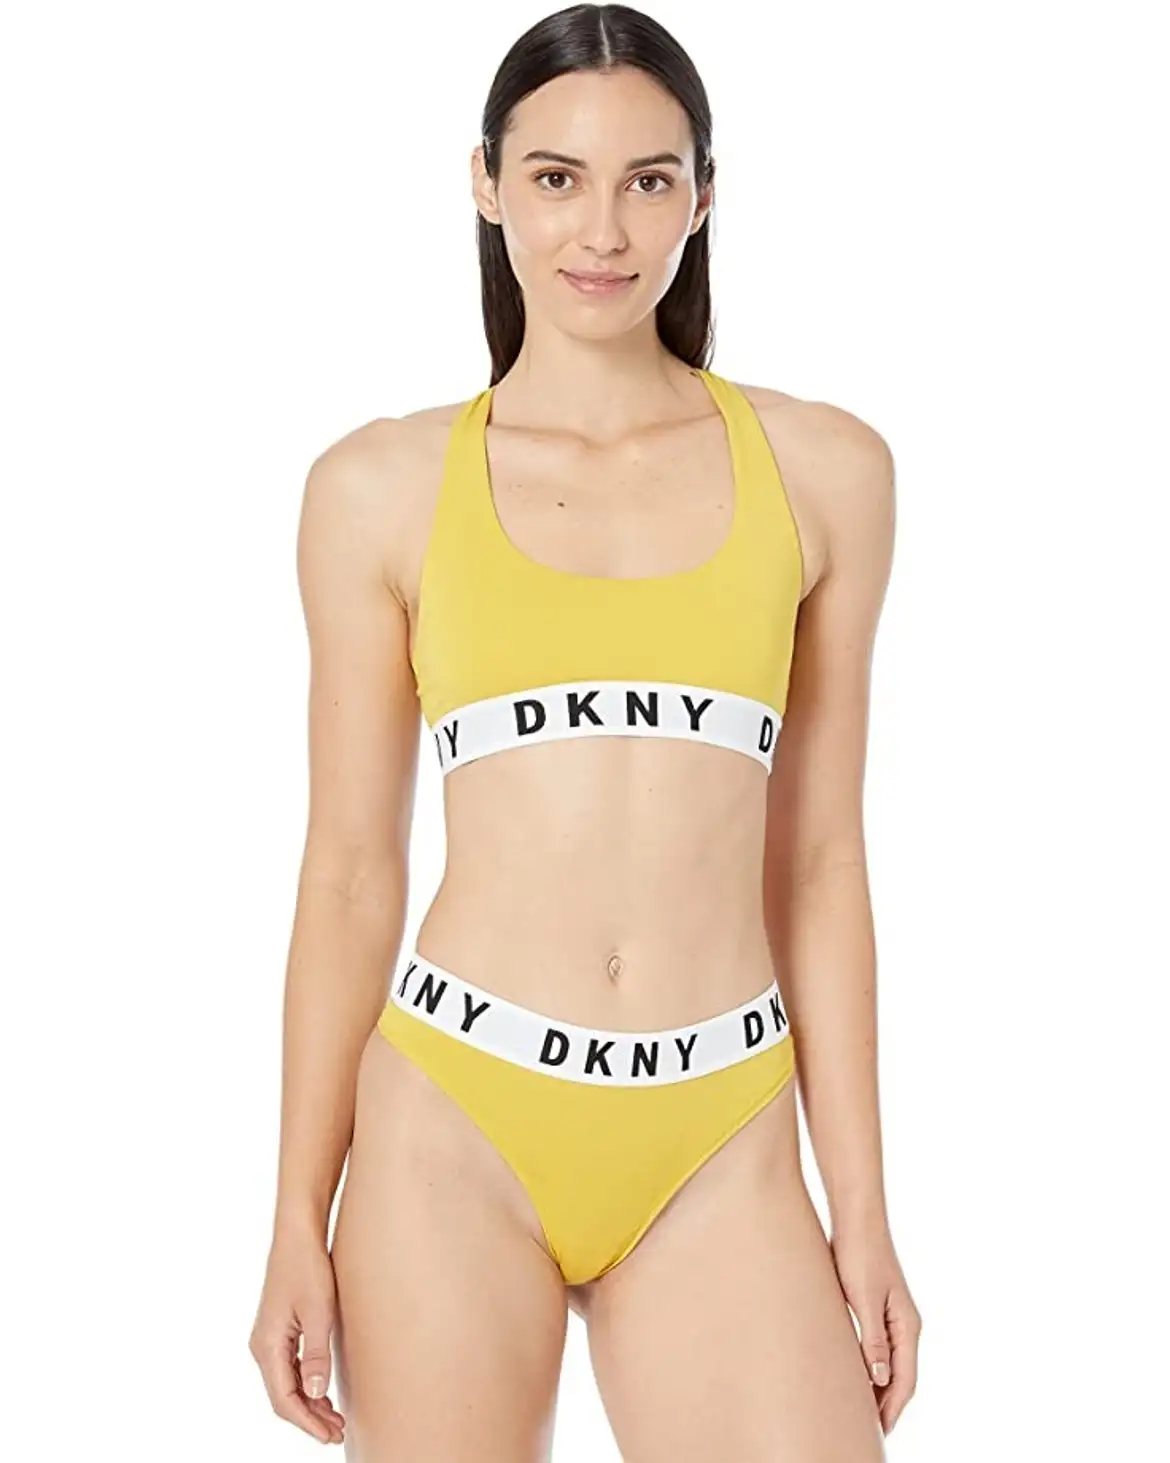 디케이앤와이-DKNY Intimates Body수트 1571688